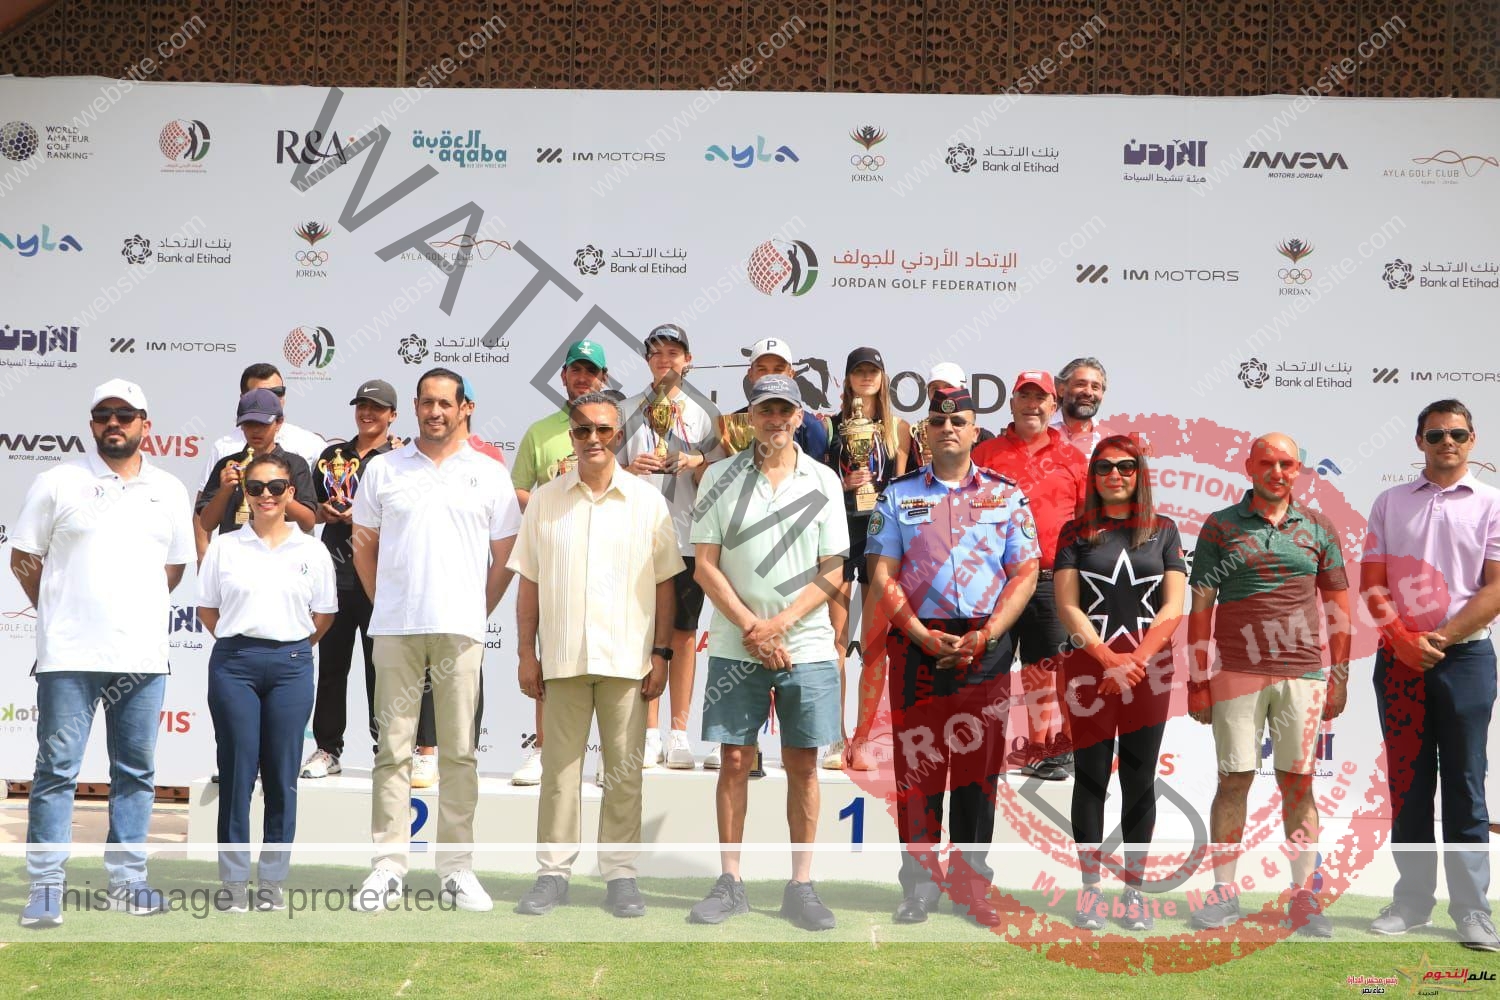 التونسي الياس برهومي يظفر بلقب النسخة الثالثة والثلاثين من بطولة الأردن المفتوحة للجولف